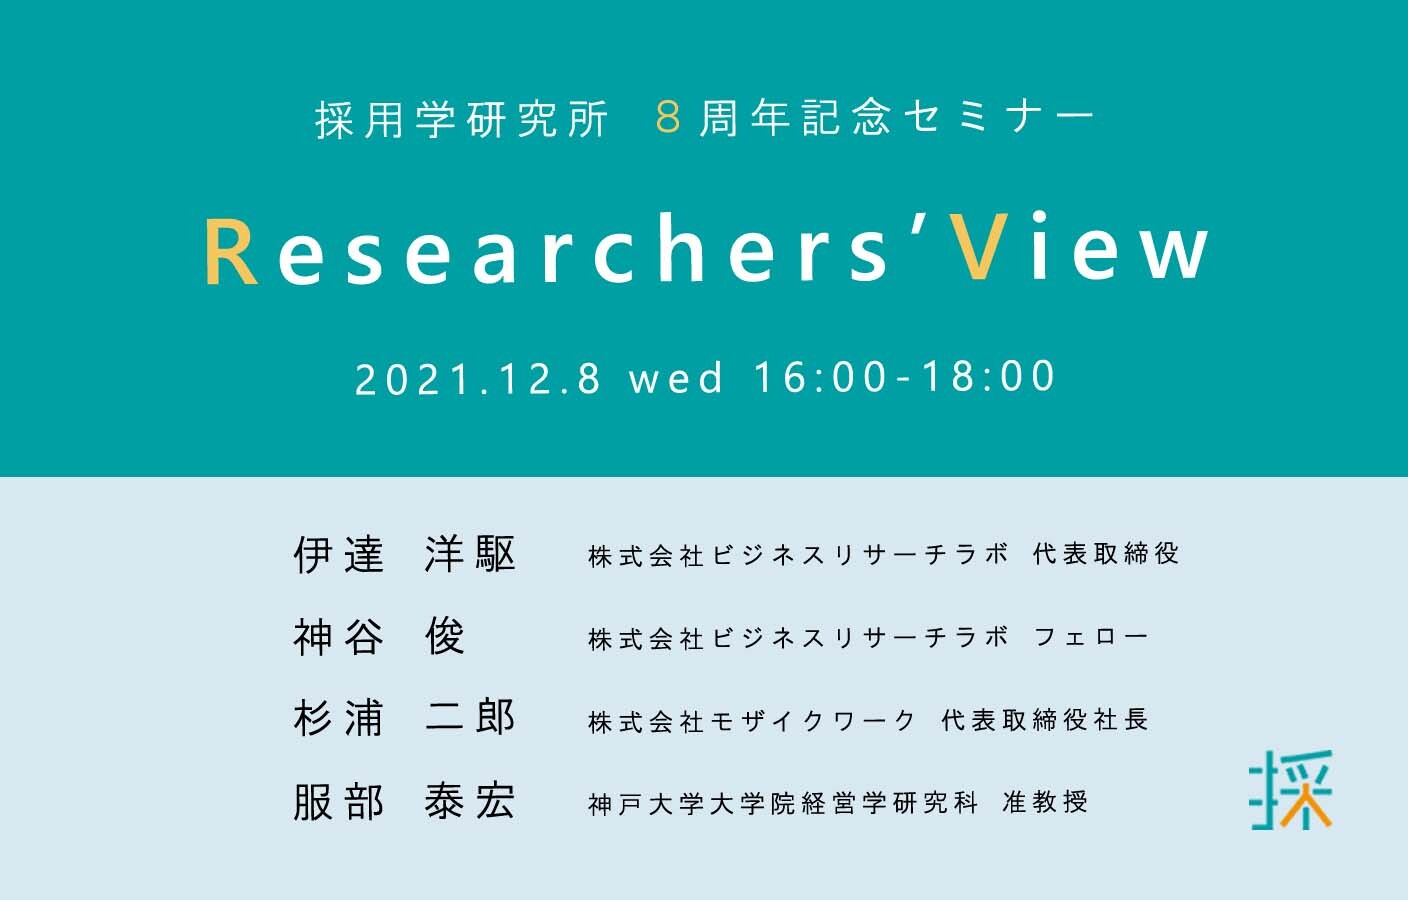 採用学8周年記念セミナー「Researchers’ View」を開催します